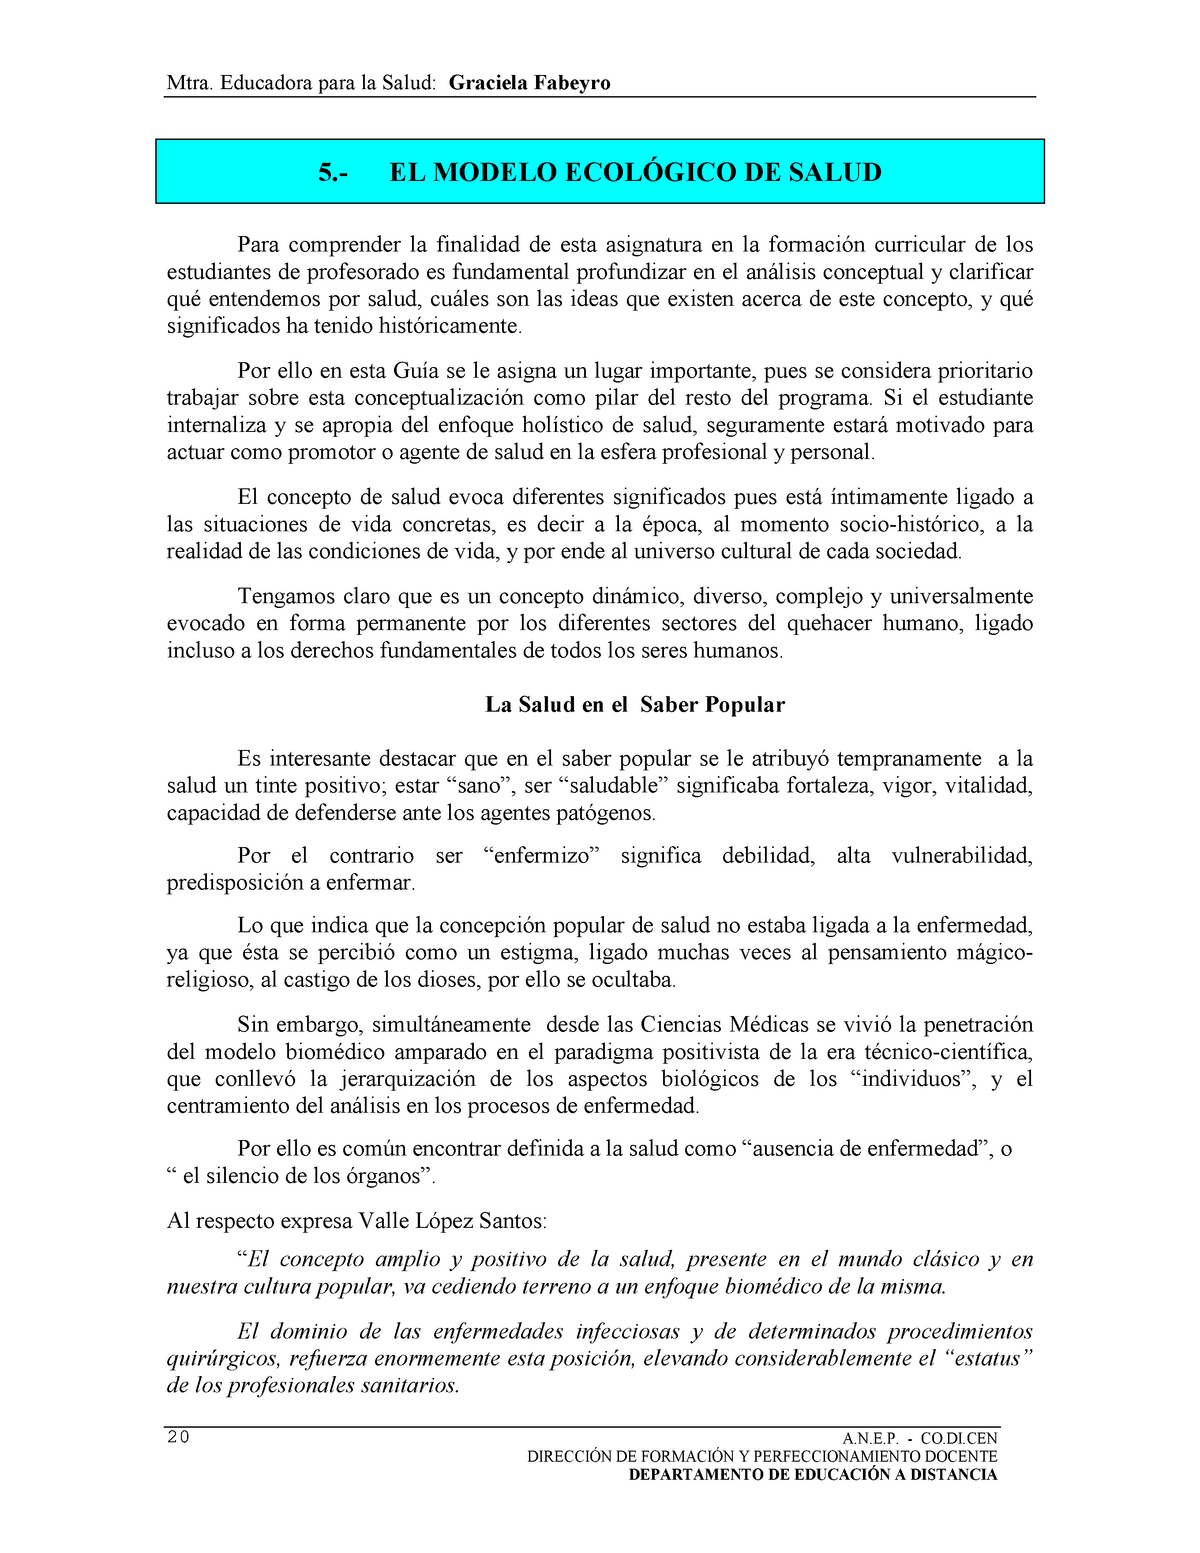 5 EL Modelo Ecologico DE Salud - Mtra. Educadora para la Salud: Graciela  Fabeyro .  - Studocu